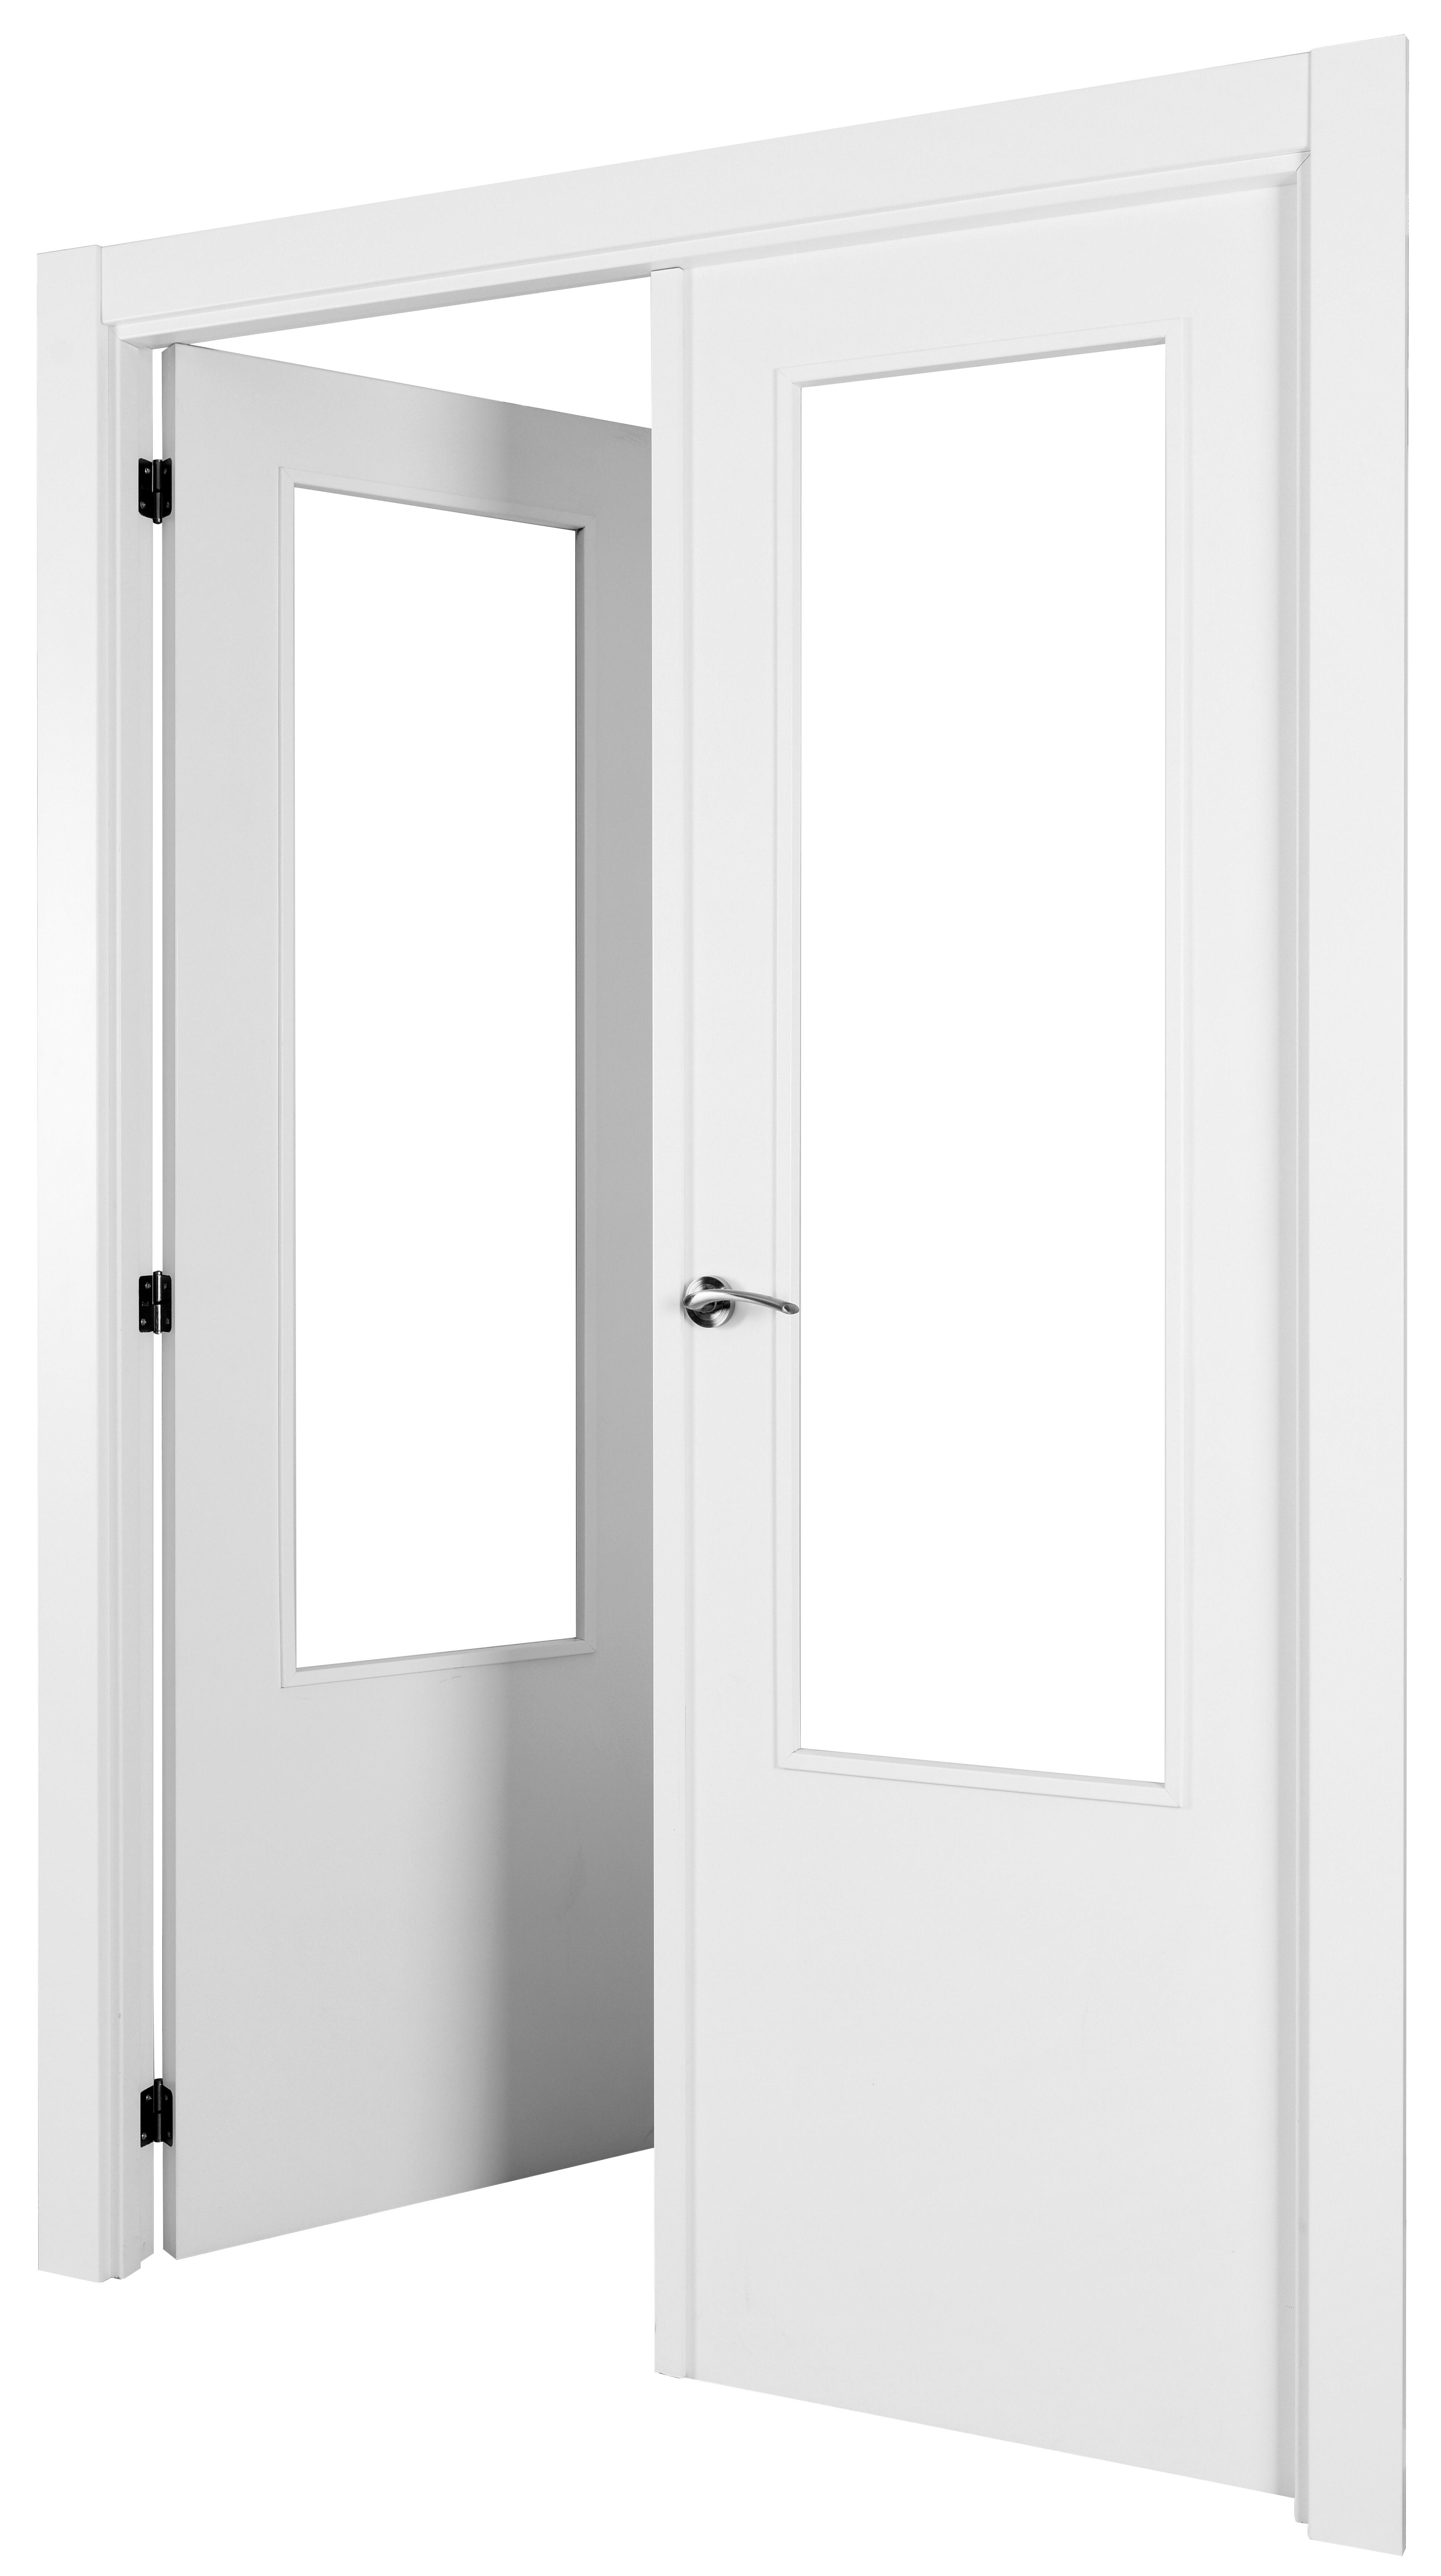 Puerta abatible lyon blanca aero blanco izquierda con cristal de 110x30 y 105cm